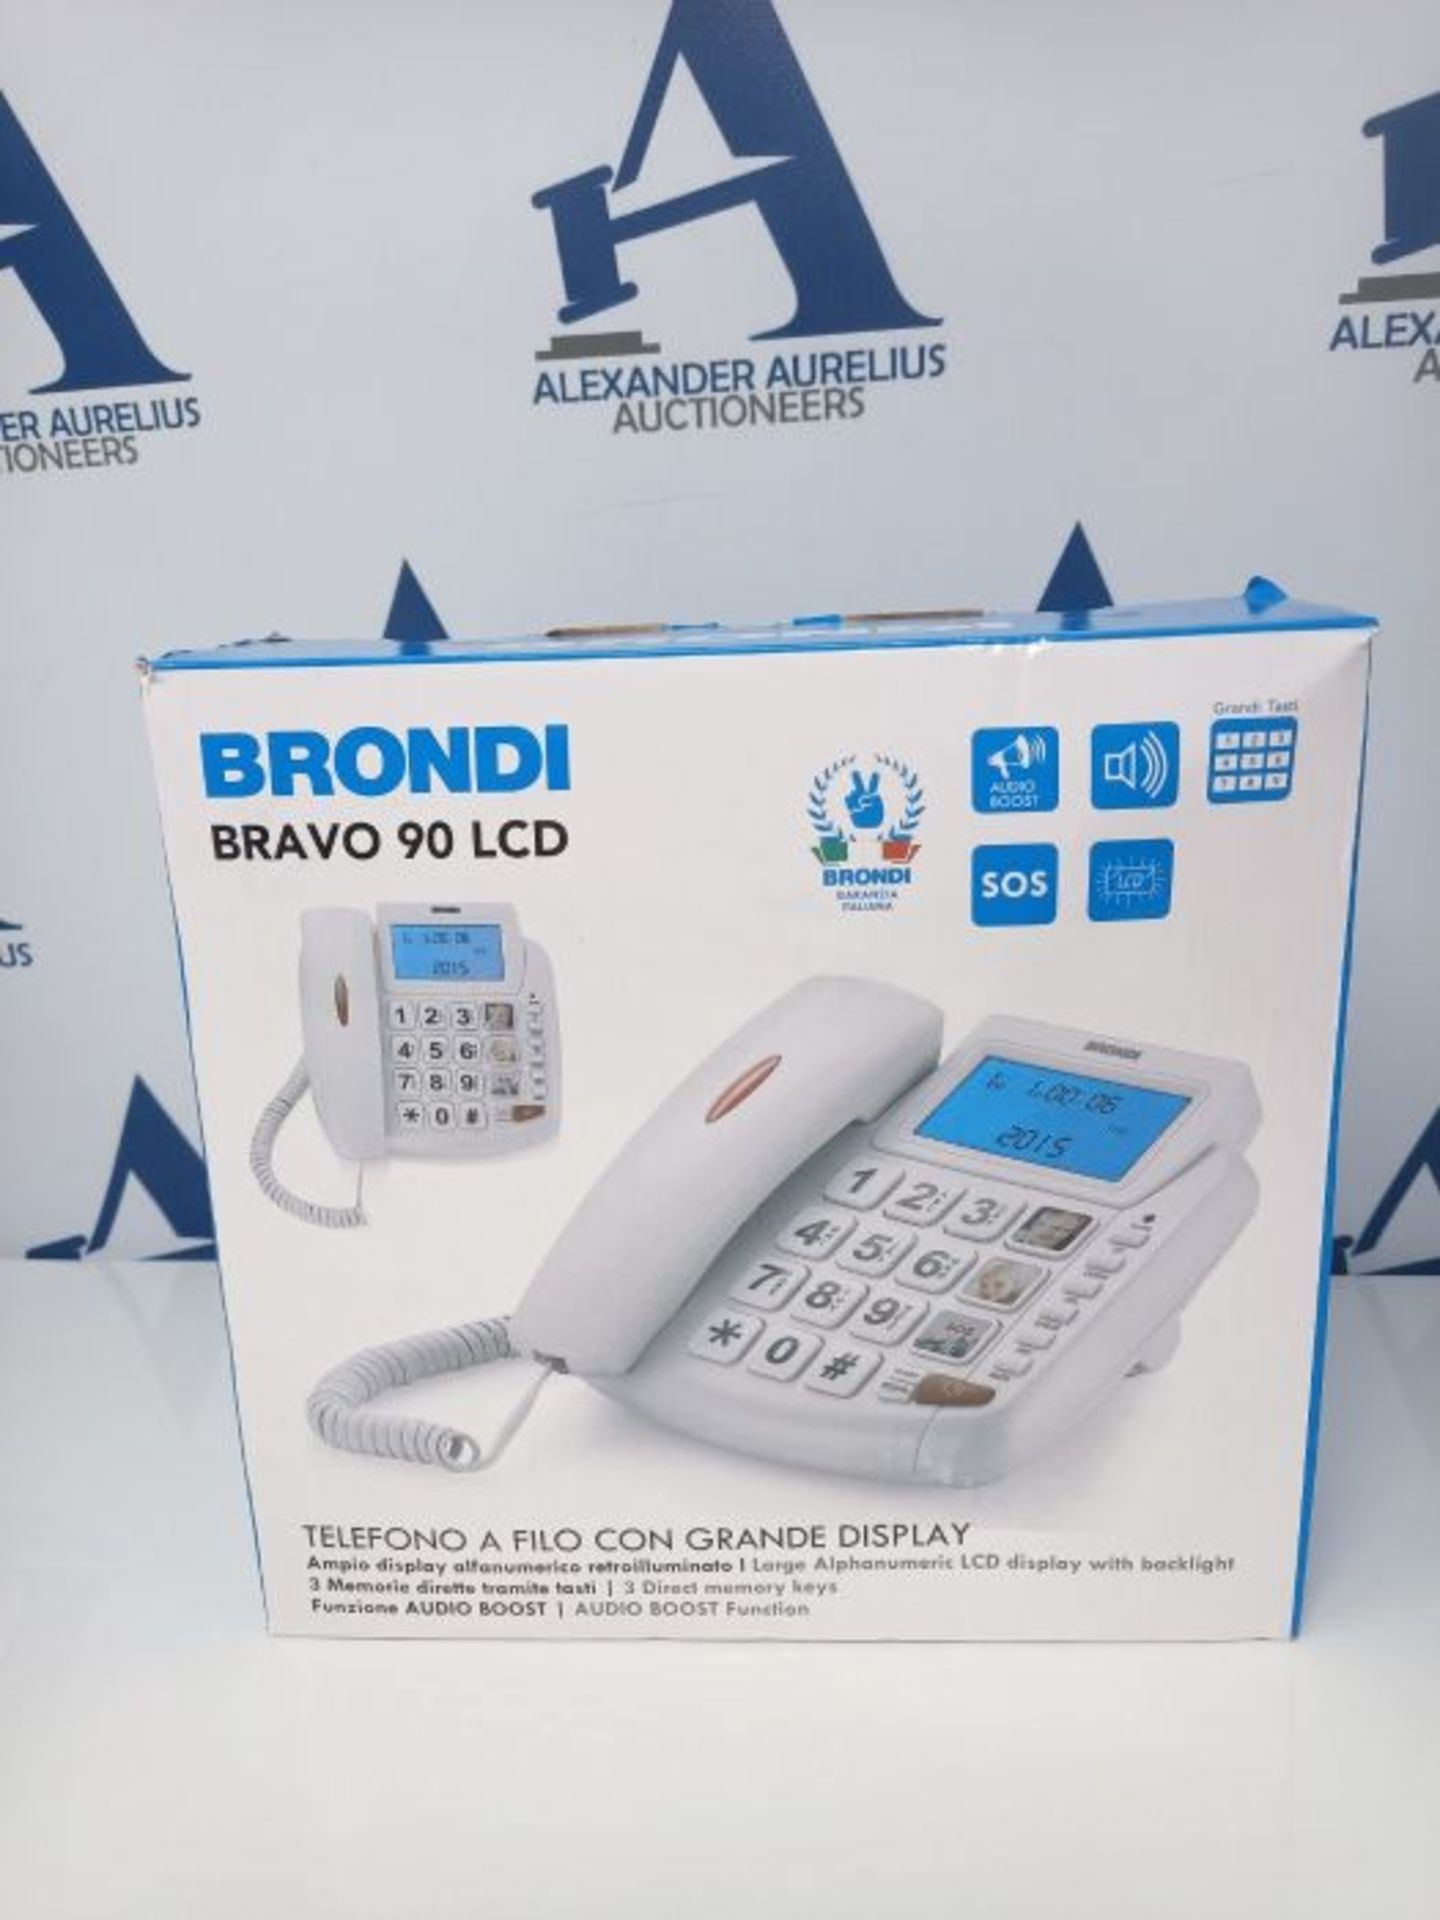 Brondi Bravo 90 LCD Telefono Fisso con tasti grandi, Bianco - Image 2 of 3